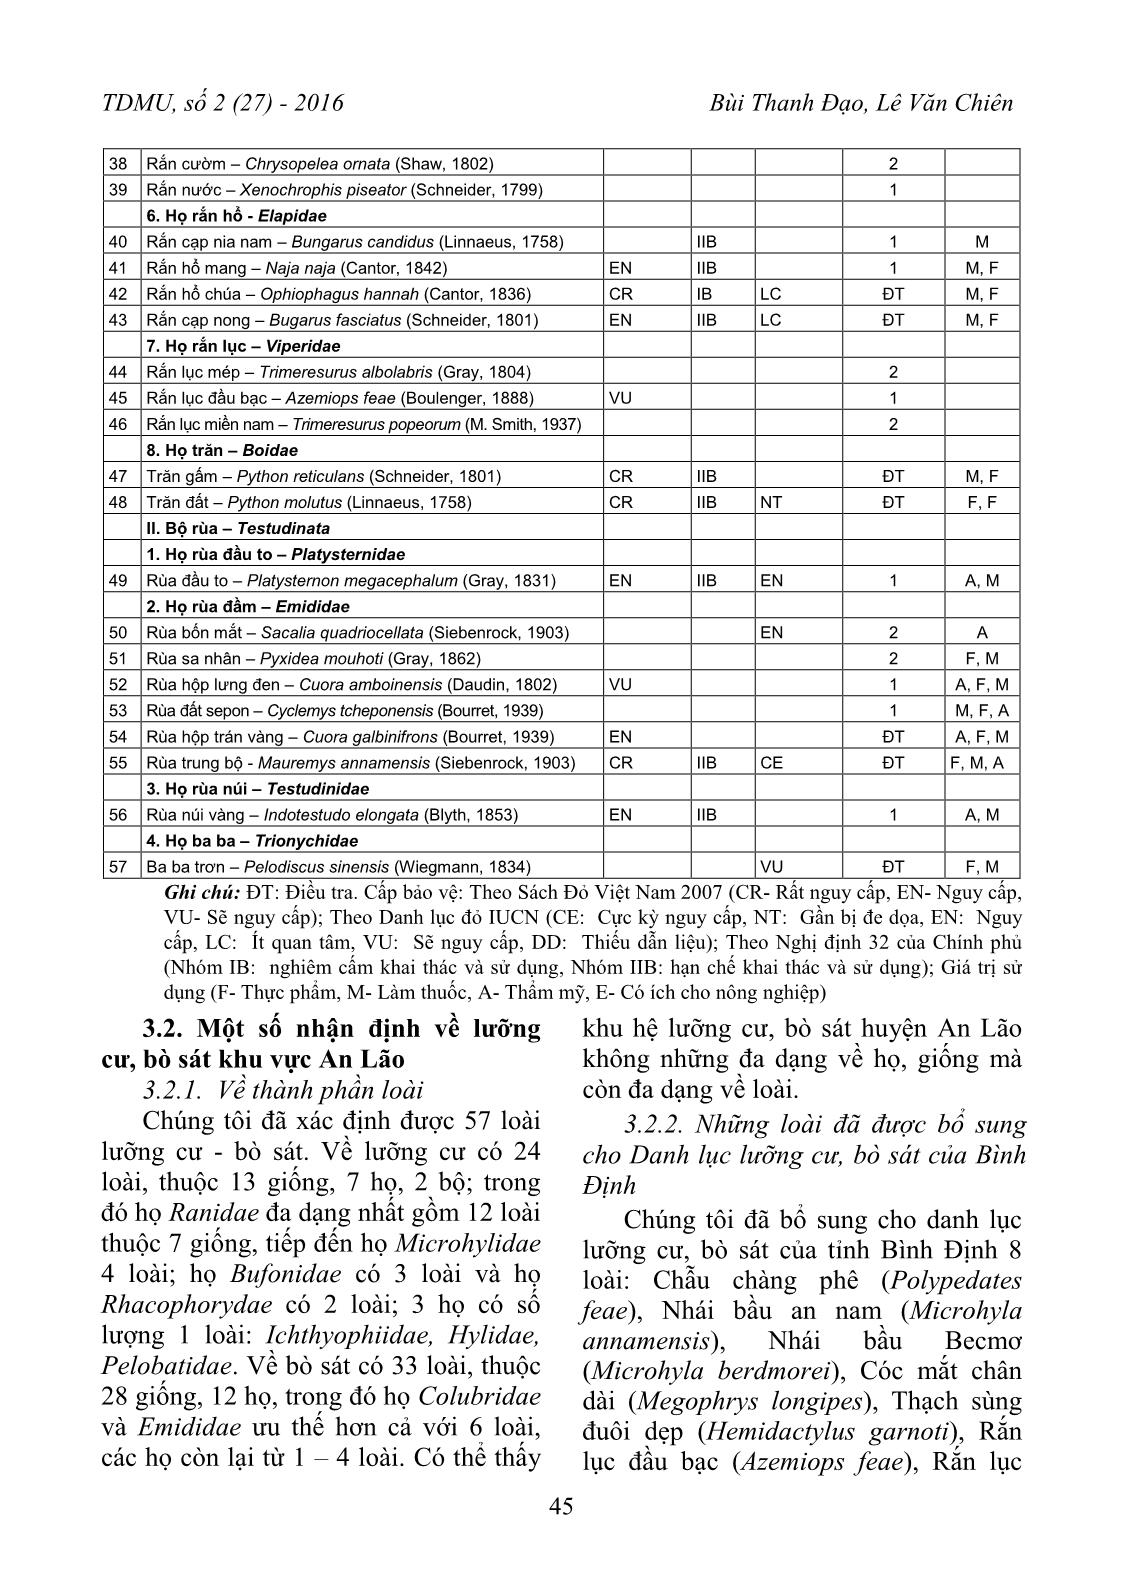 Kết quả điều tra thành phần loài lưỡng cư, bò sát huyện An Lão, tỉnh Bình Định trang 4